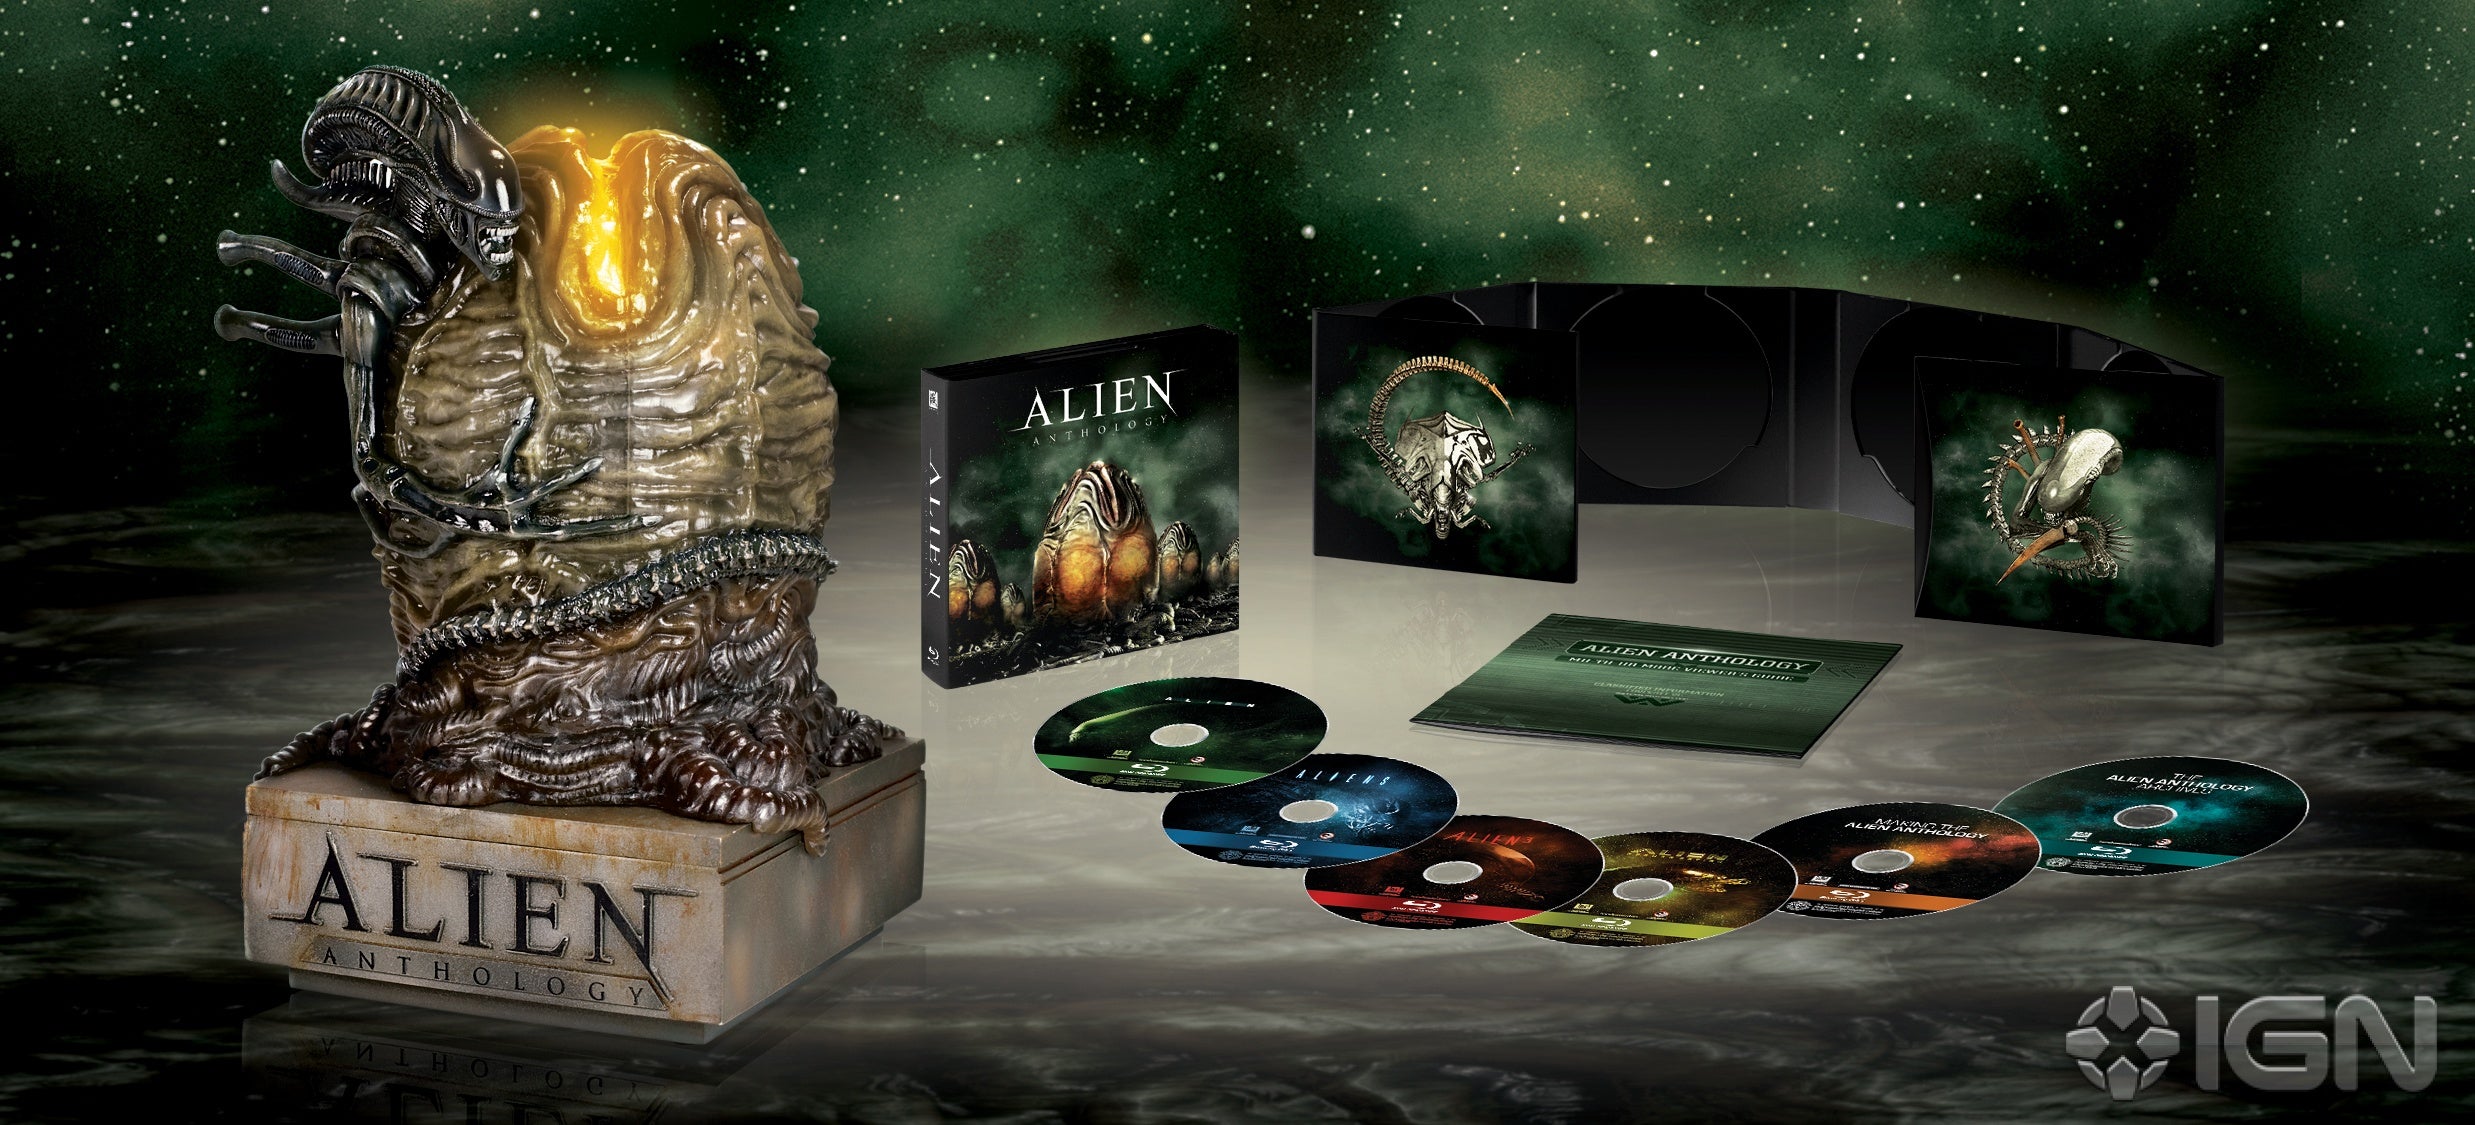 alien-anthology-20100714025510884.jpg